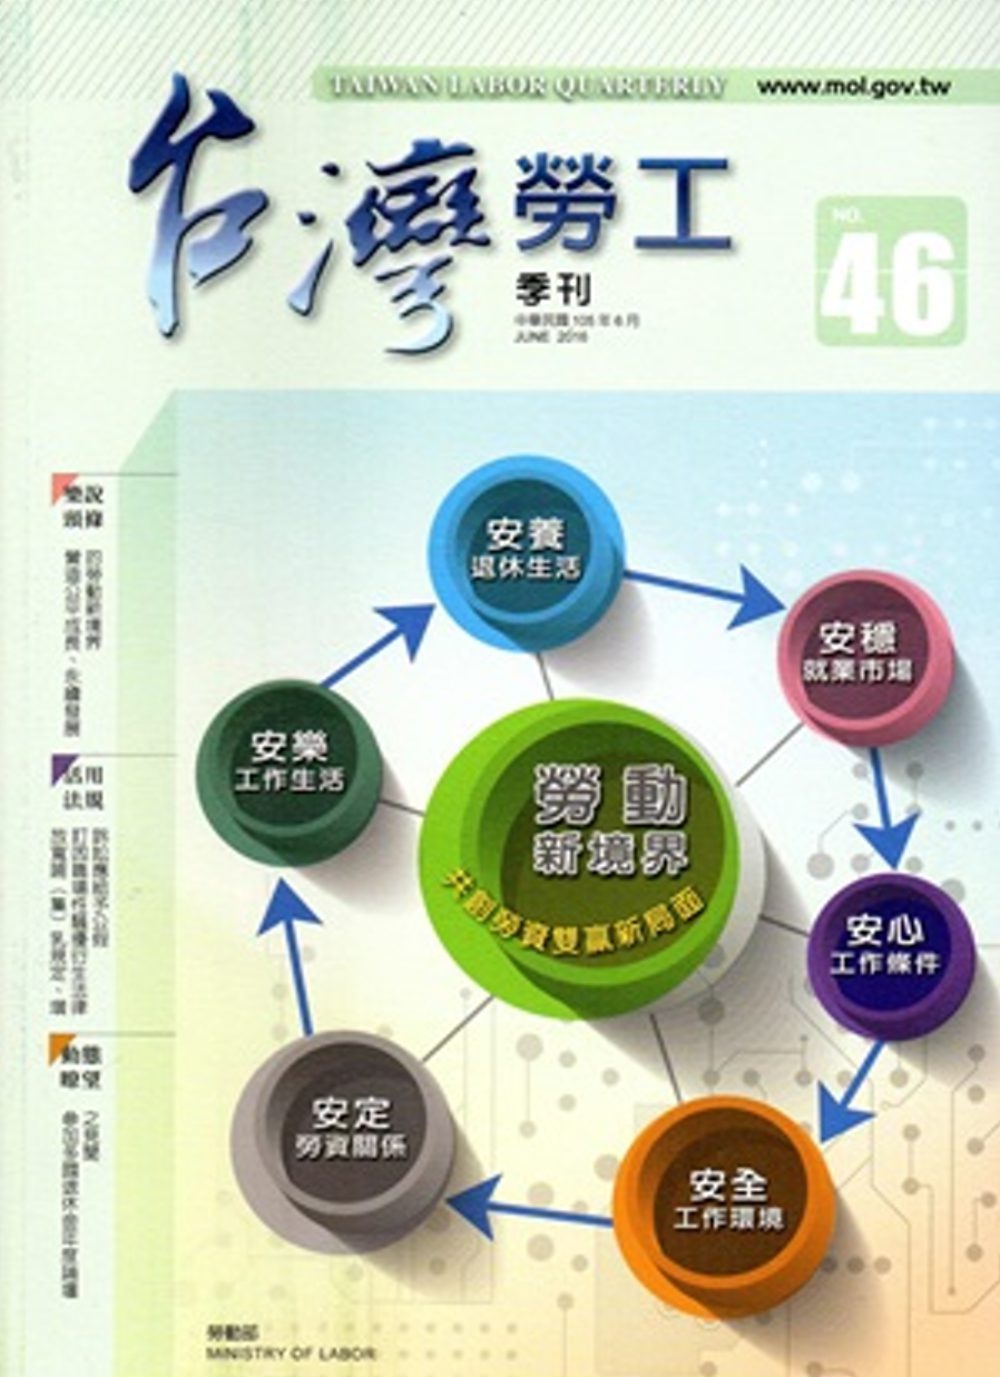 台灣勞工季刊第46期105.06